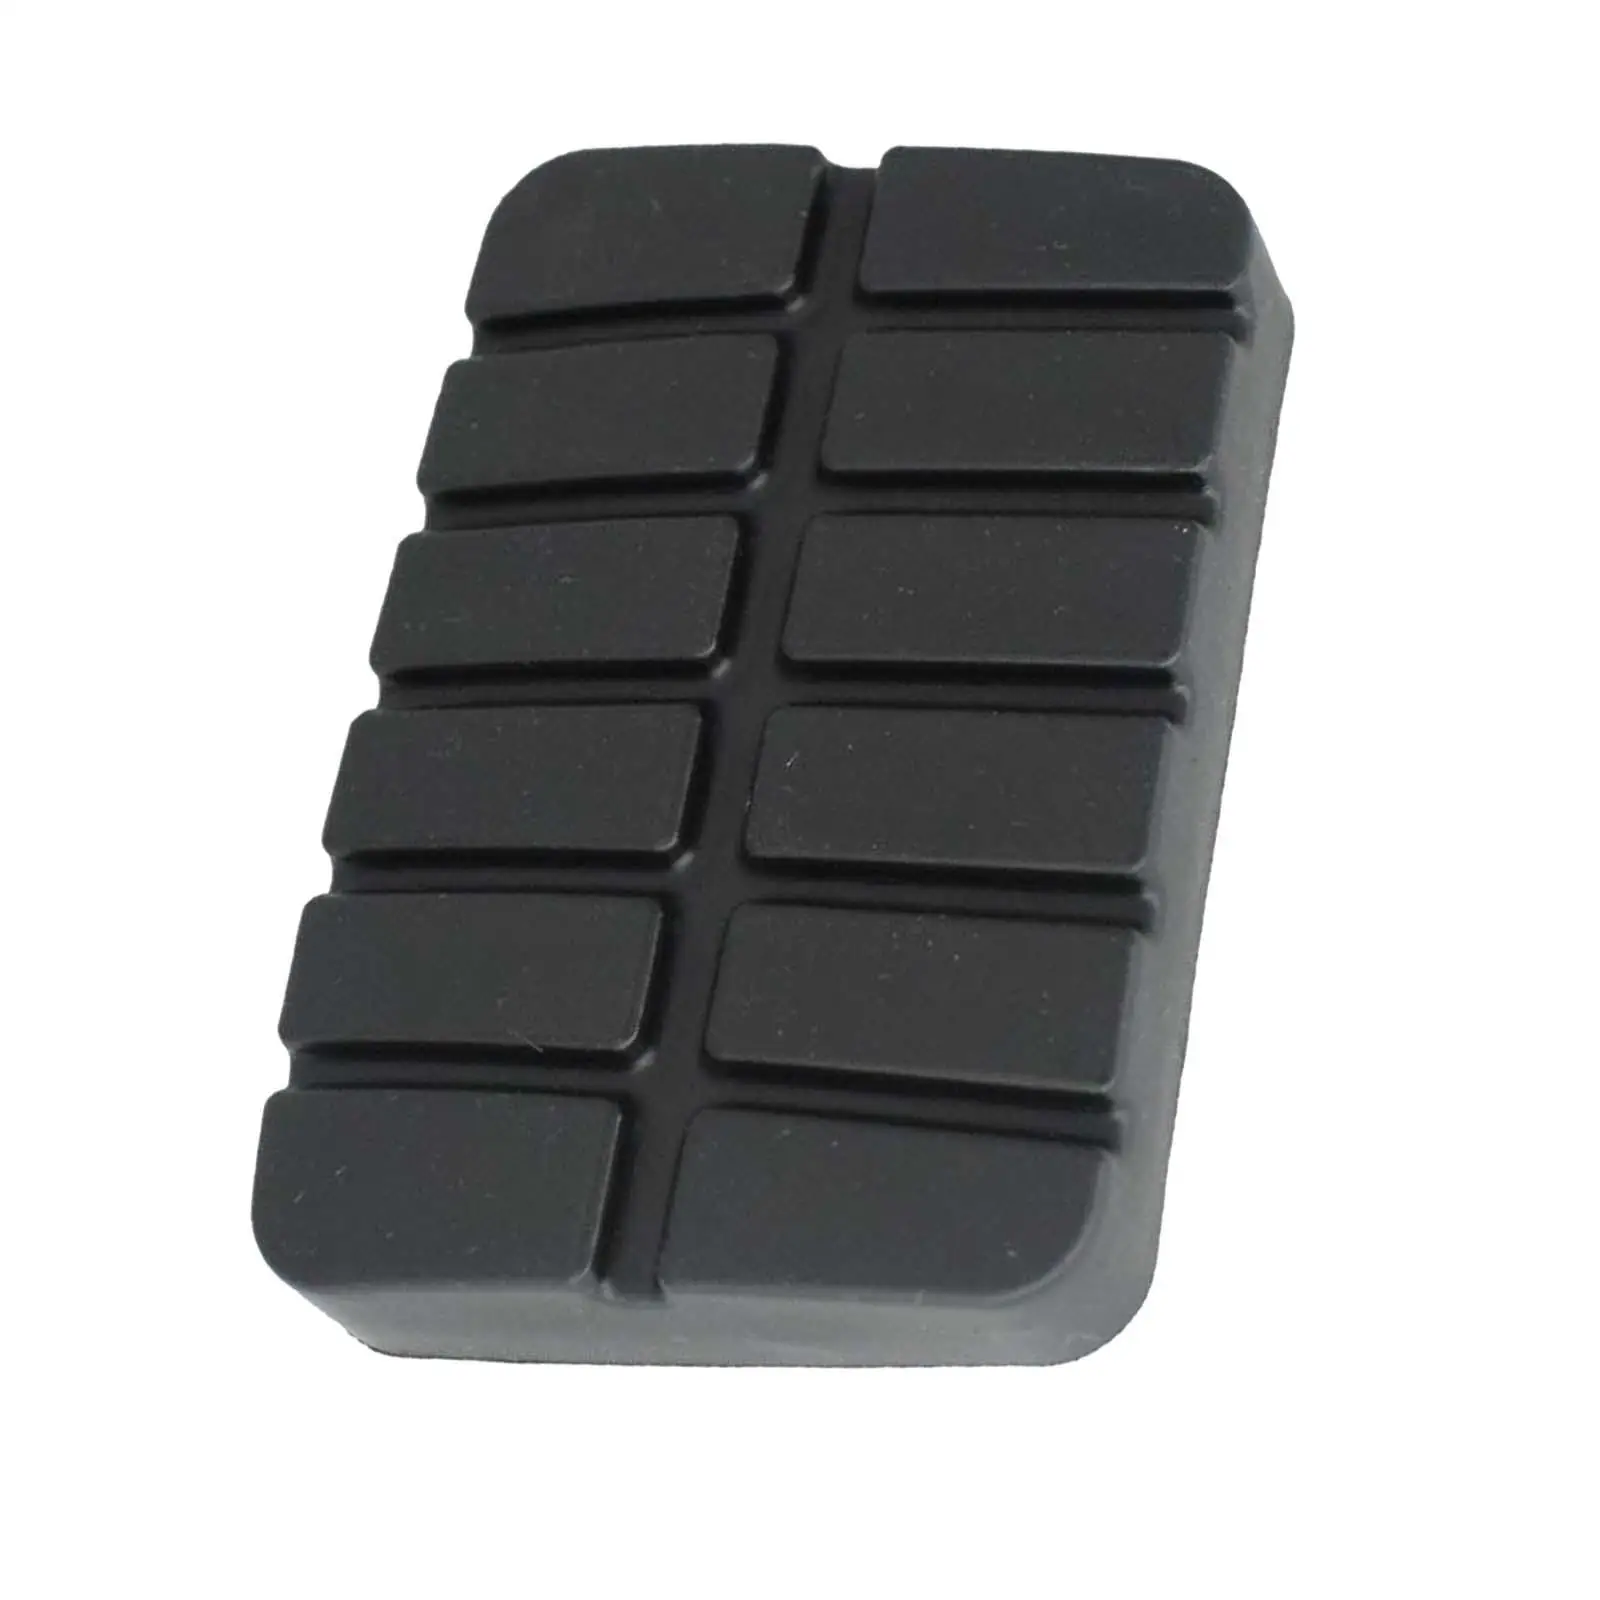 Black Brake Clutch Pedal Rubber Cover 49751-ni110 compatible